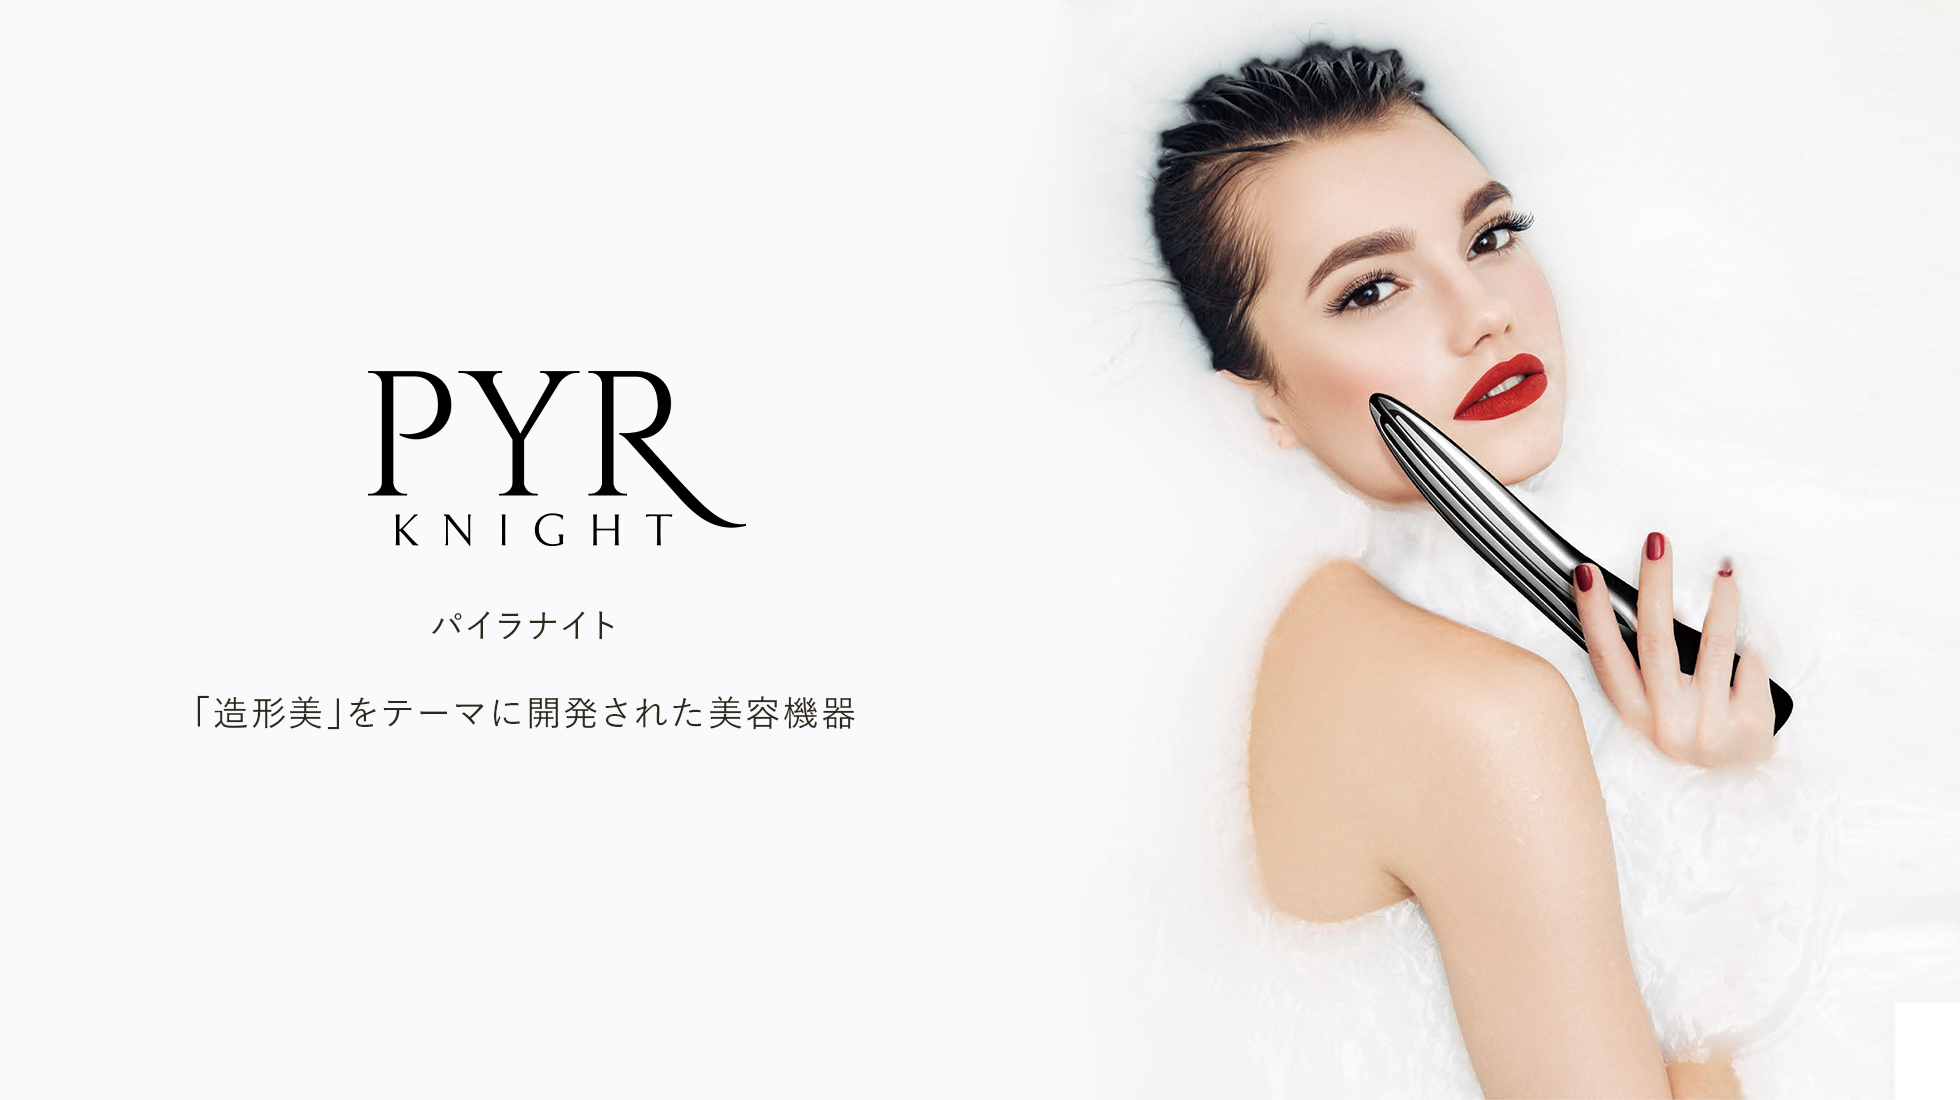 パイラナイト PYR KNIGHT シェイプアップ 美顔器 - 美容機器